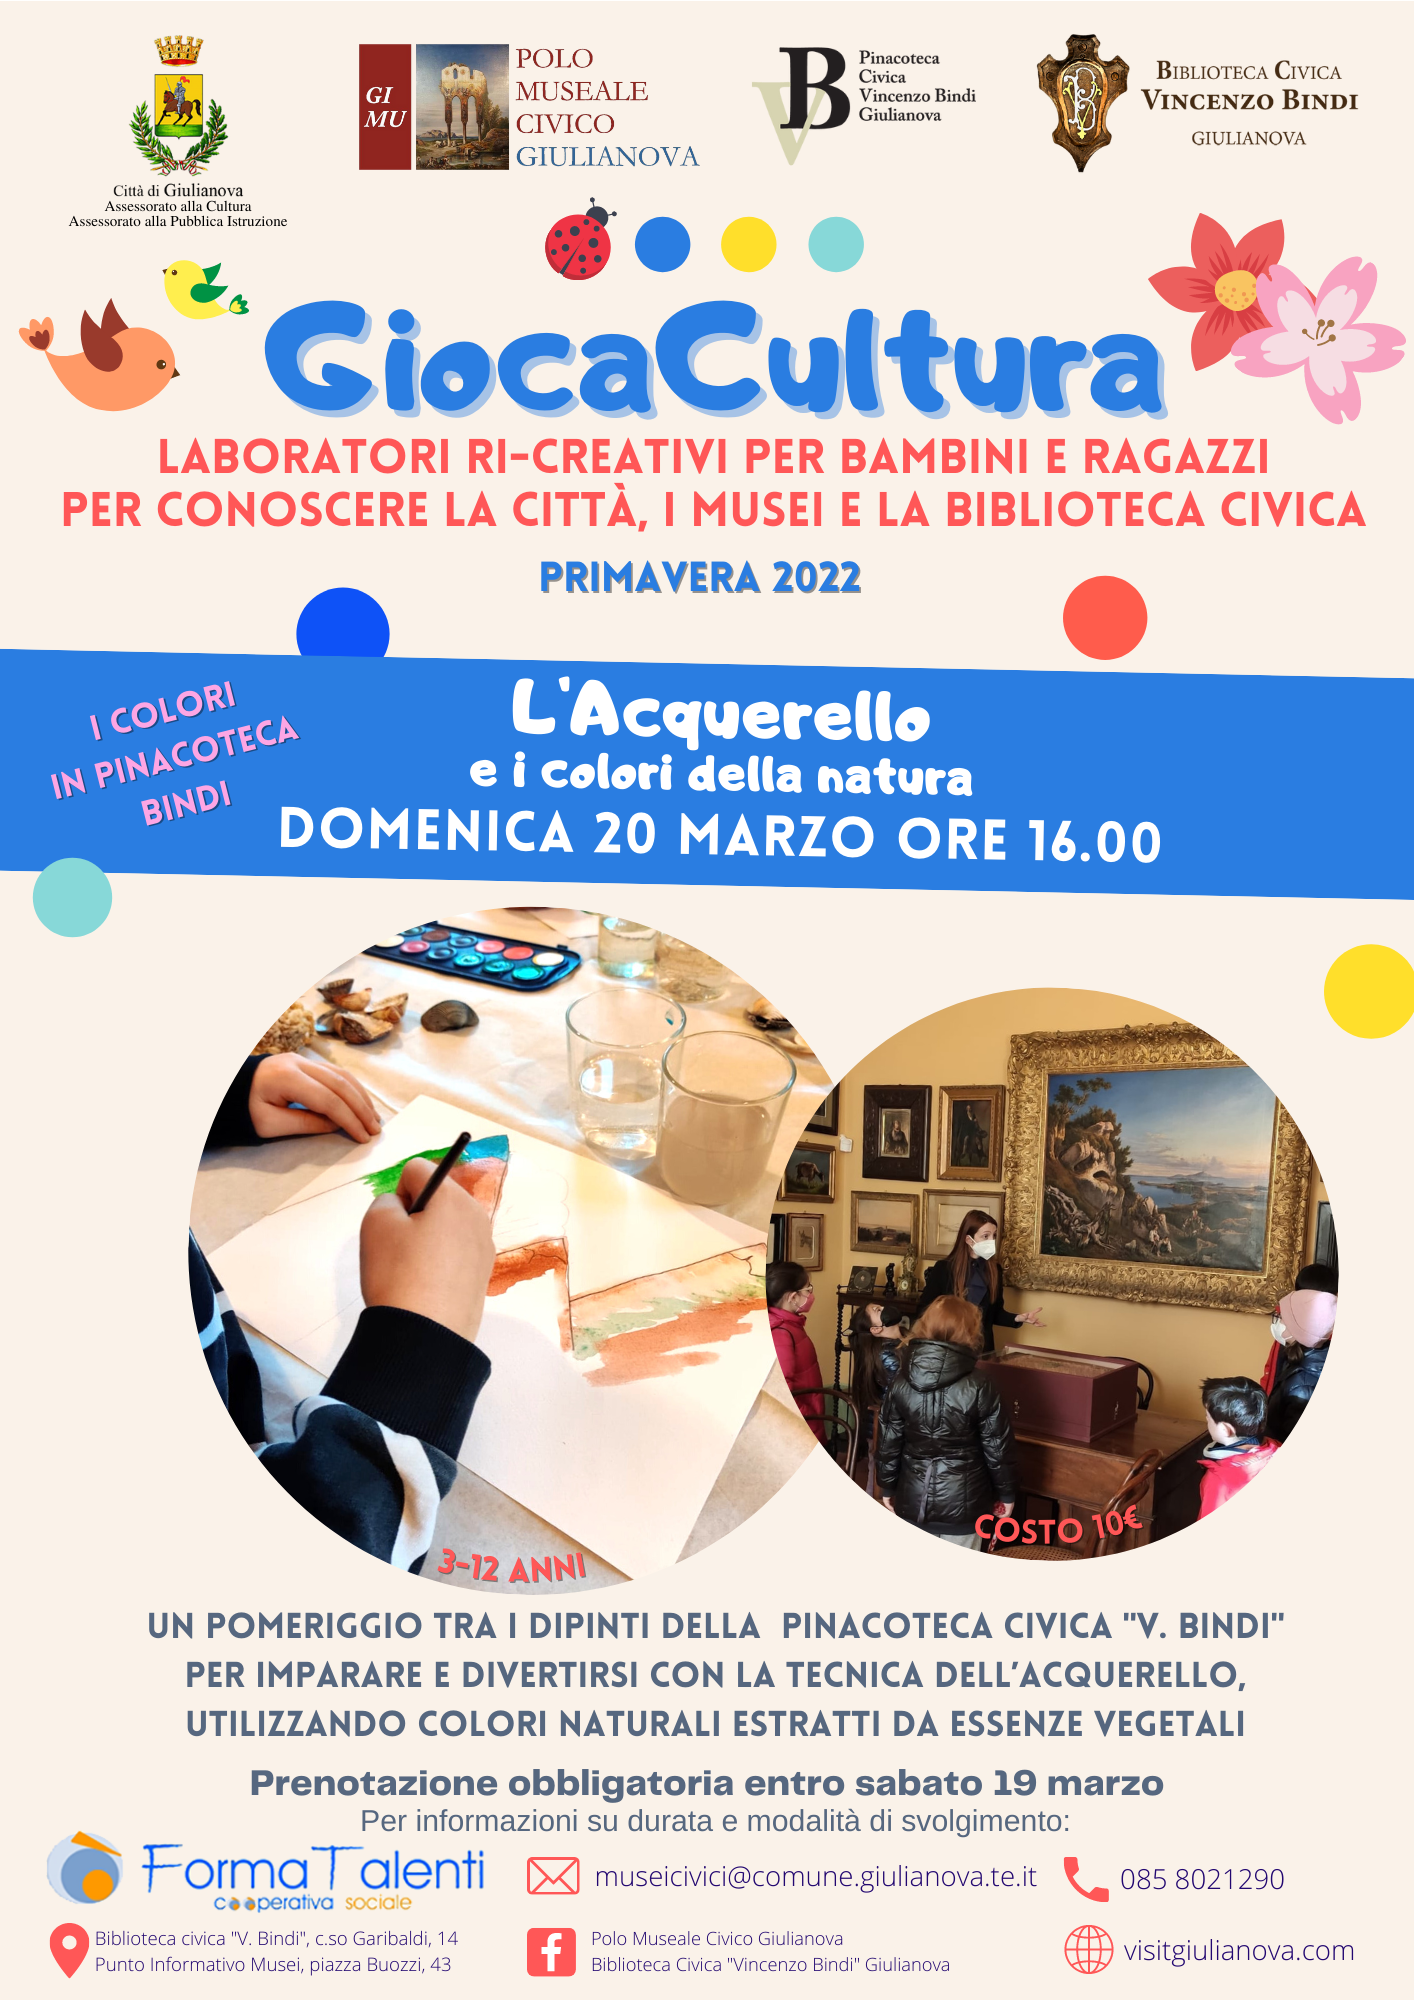 Giulianova. “GiocaCultura”: un nuovo pomeriggio per i bambini alla “Pinacoteca Bindi”